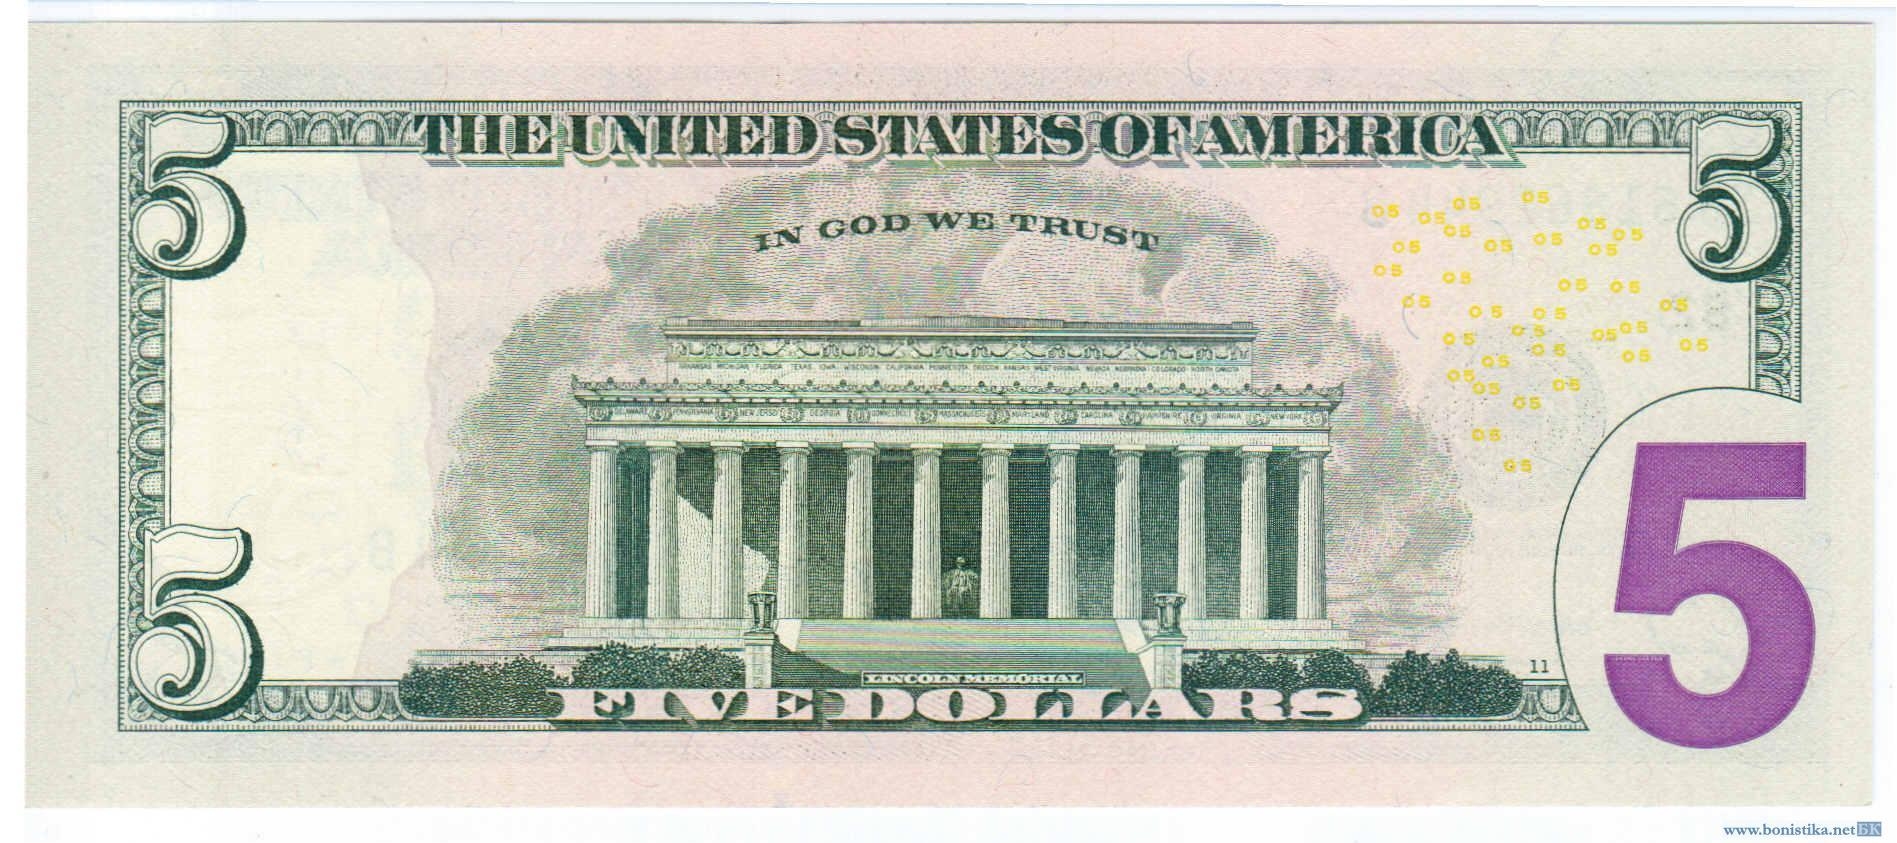 Изображение Верховного федерального суда США на банкноте в 5 долларов